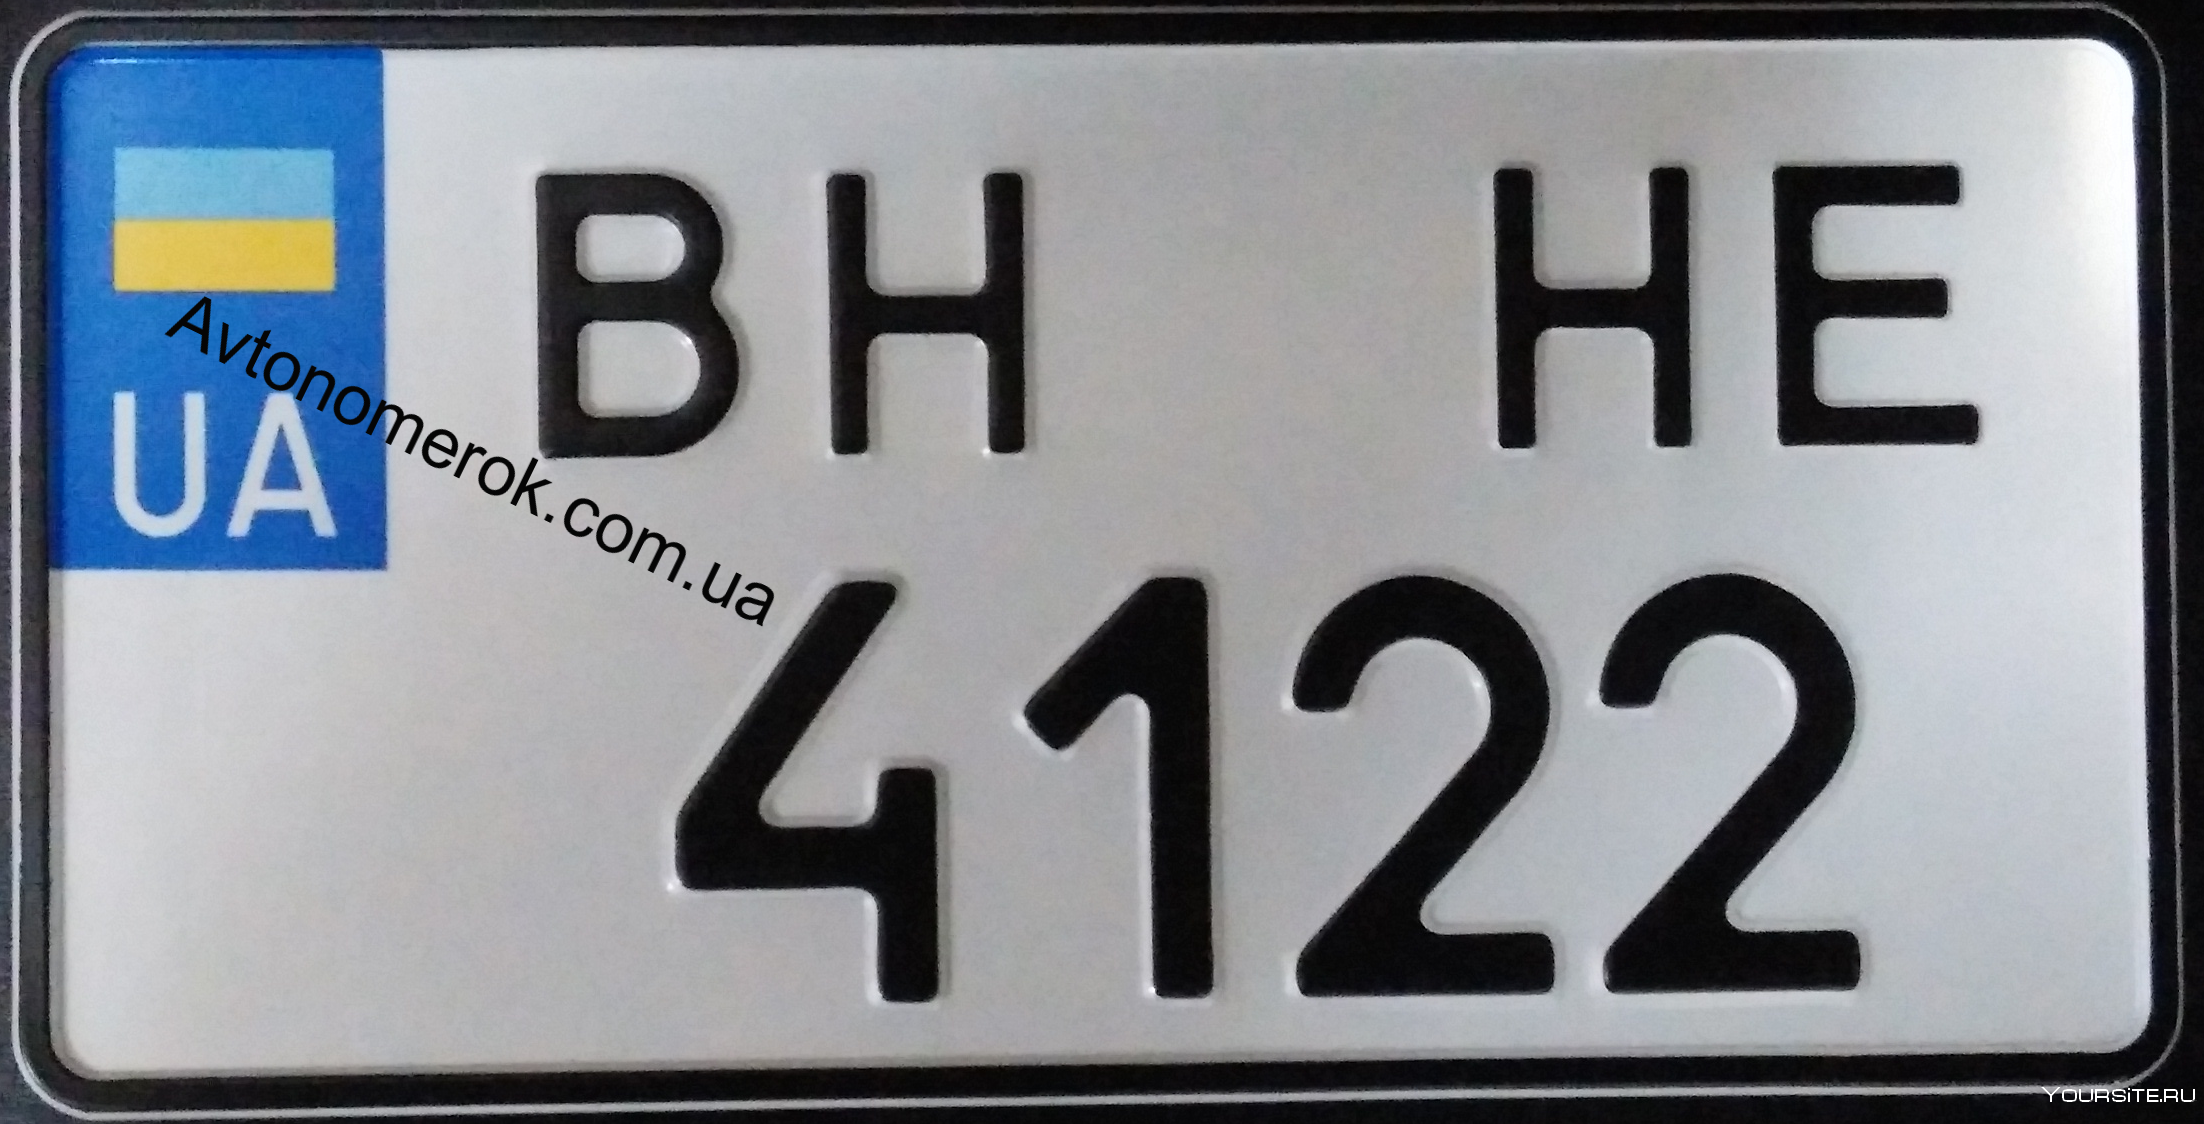 Квадратные номера на американские машины. Украинские номера квадратные. Украинские номера авто квадратные. Германские номера на авто квадратные. Номера ввв